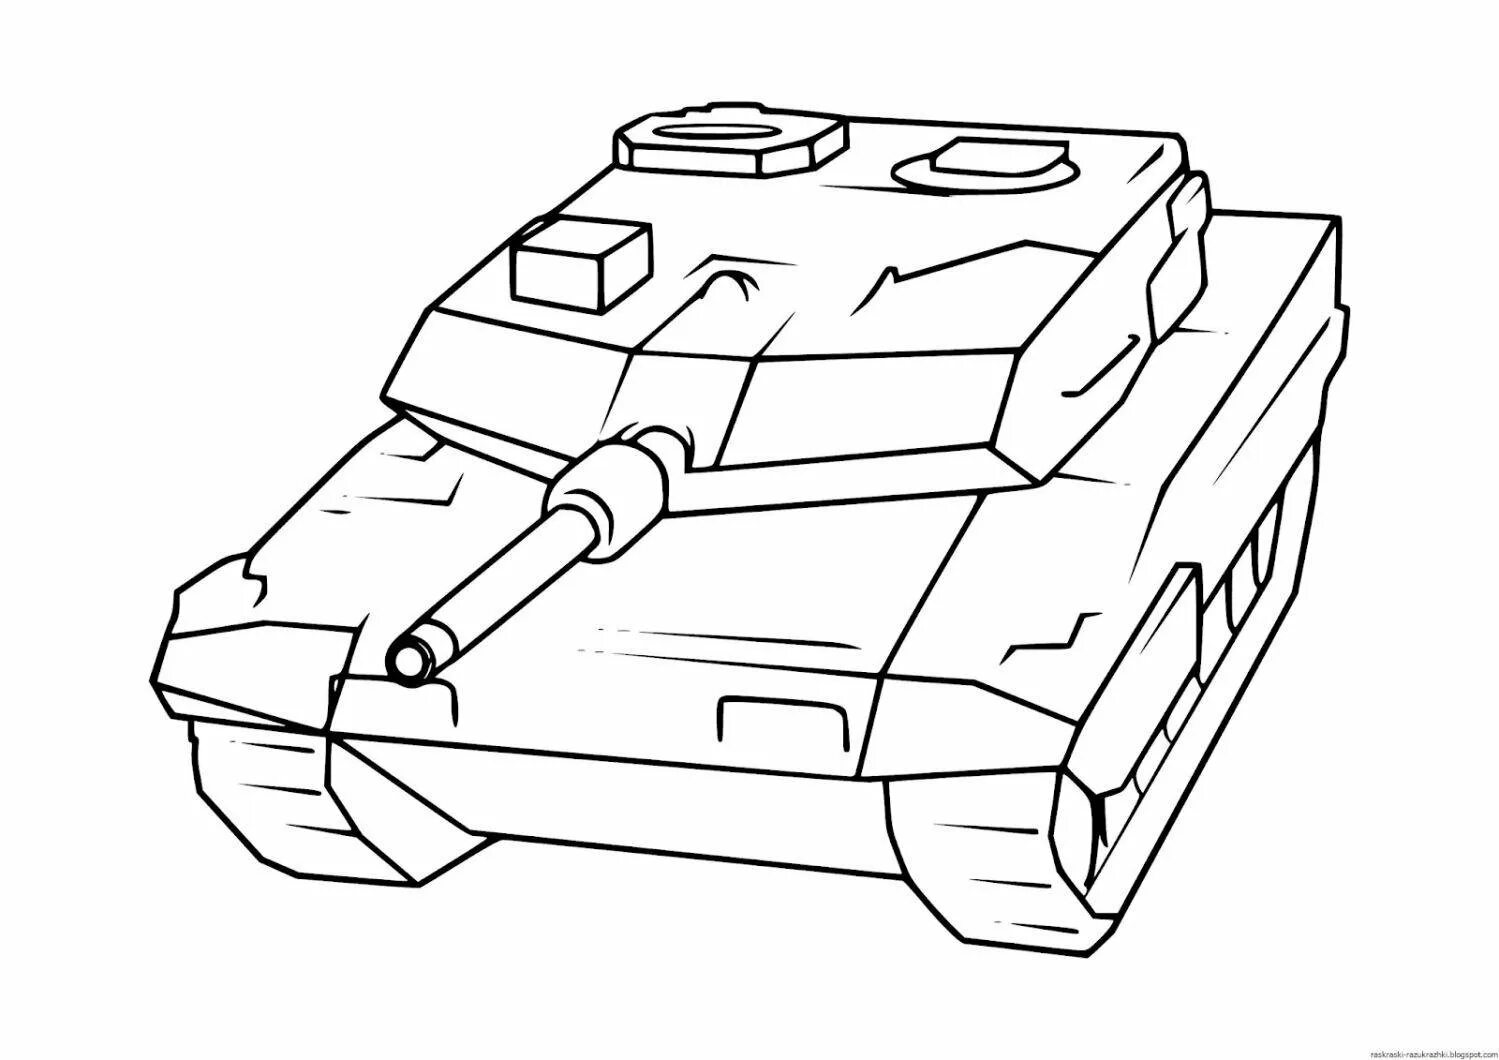 Танки раскраска а4. Раскраска танк Maus. Раскраска танк т 34 Формат а4. Раскраска танк т34 Военная техника для детей. Раскраска панк.